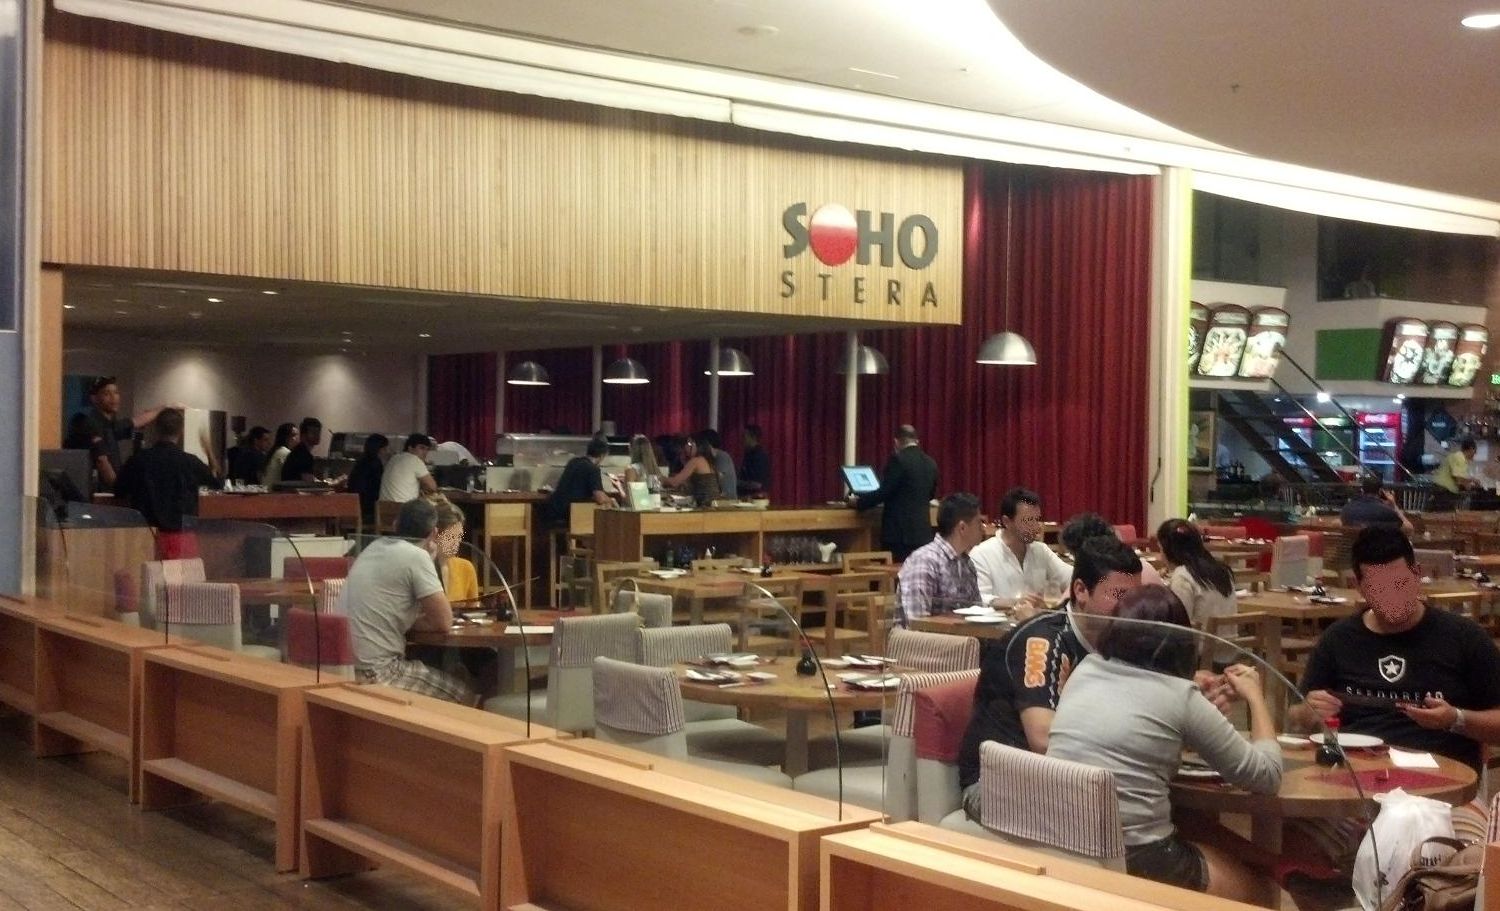 Soho Stera - Fachada - Onde Comer em Salvador - Bares e restaurantes em Salvador -  Restaurantes japoneses em Salvador